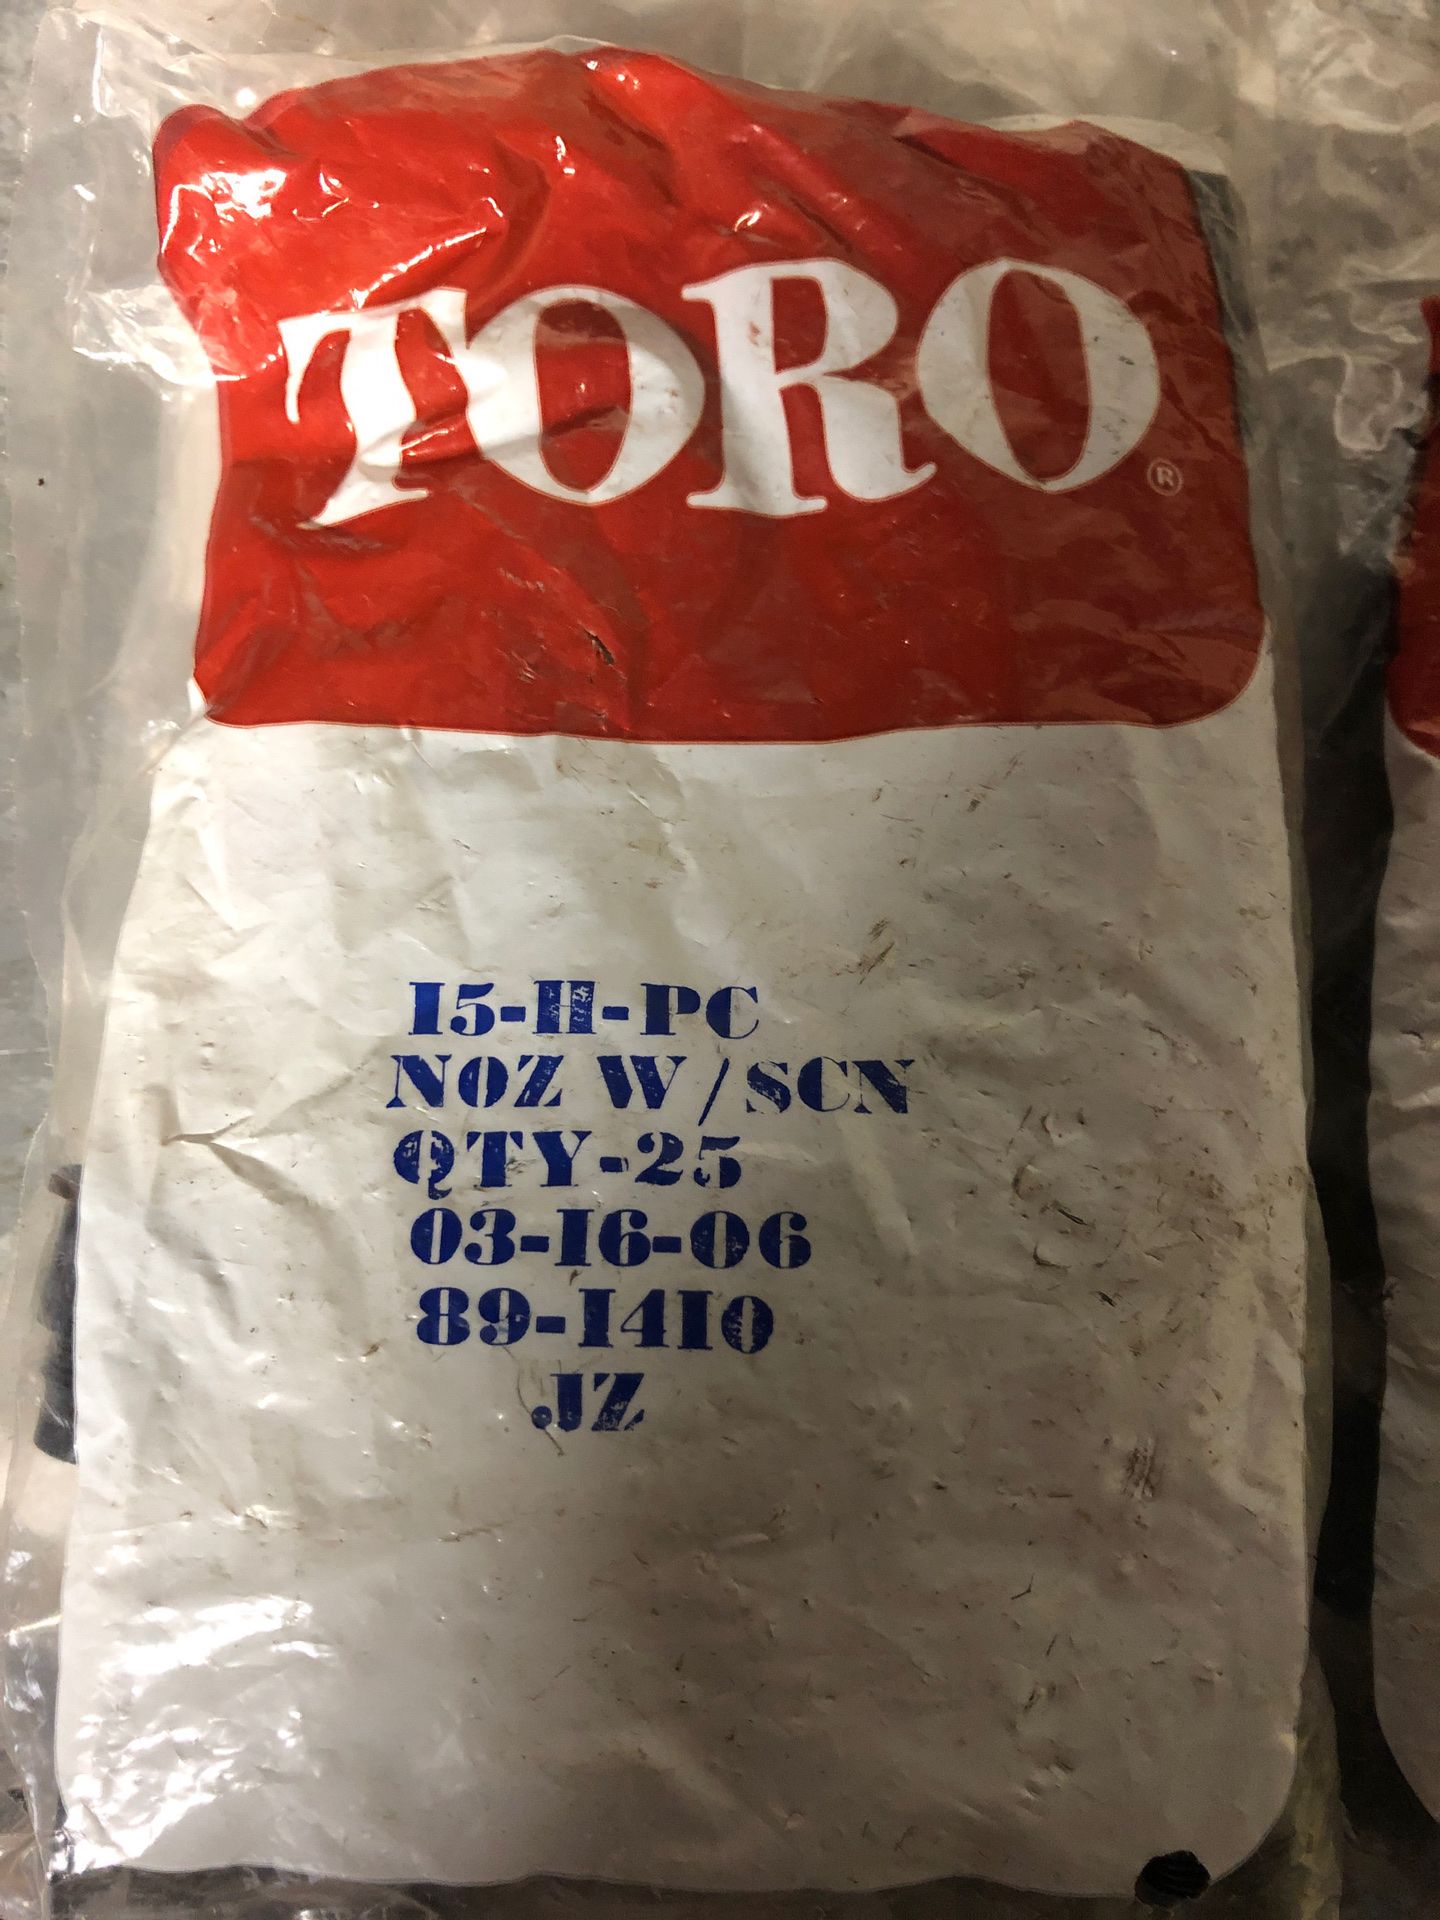 Toro 570 series Nozzels